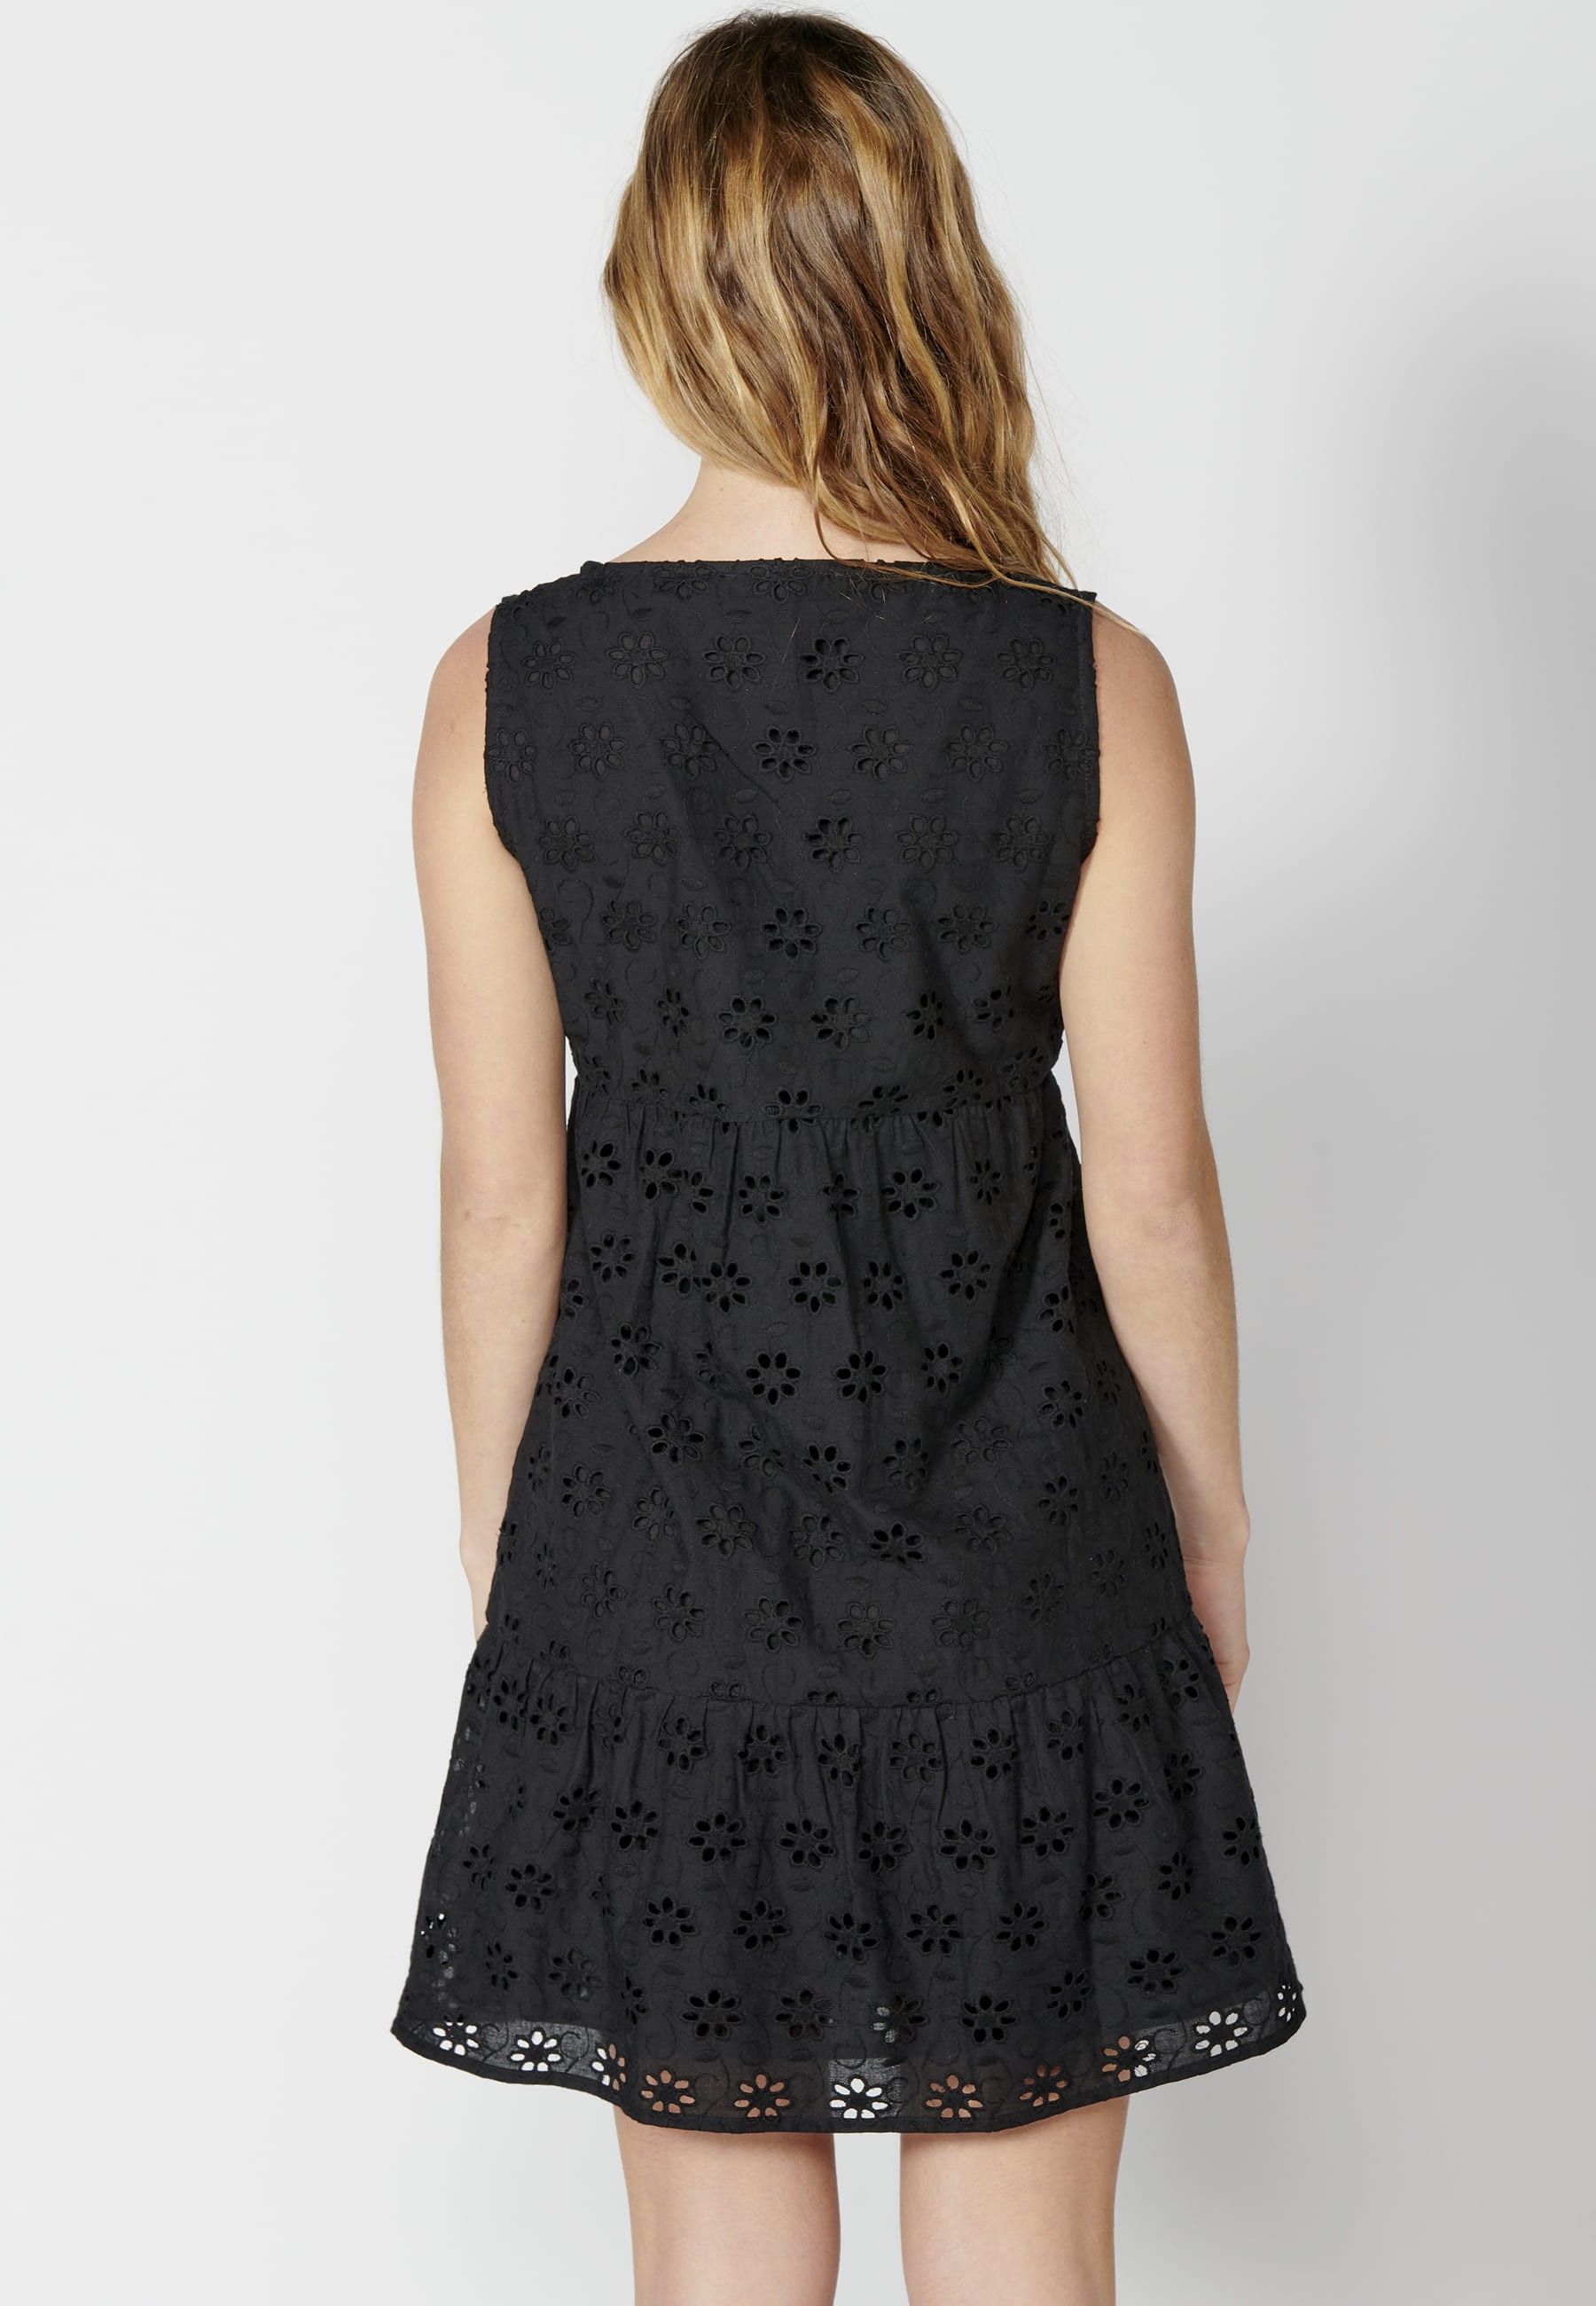 Vestido corto fluido sin mangas de Algodón con bordado floral color Negro para Mujer